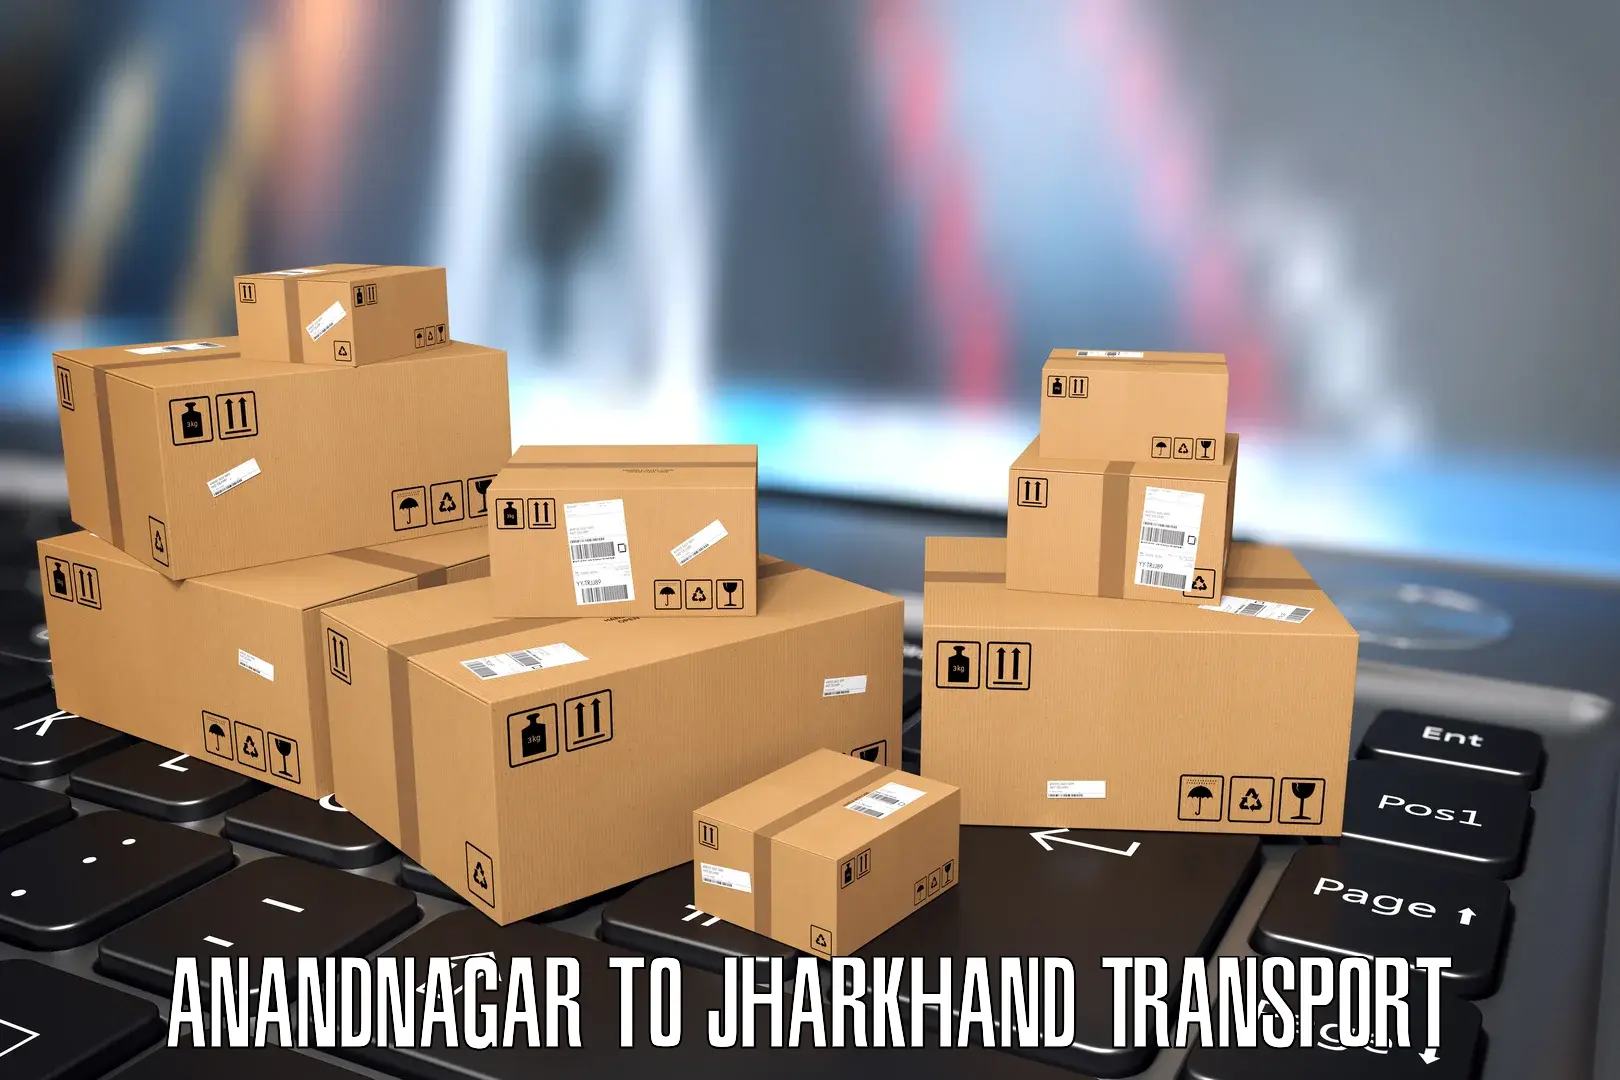 Online transport service Anandnagar to Garhwa